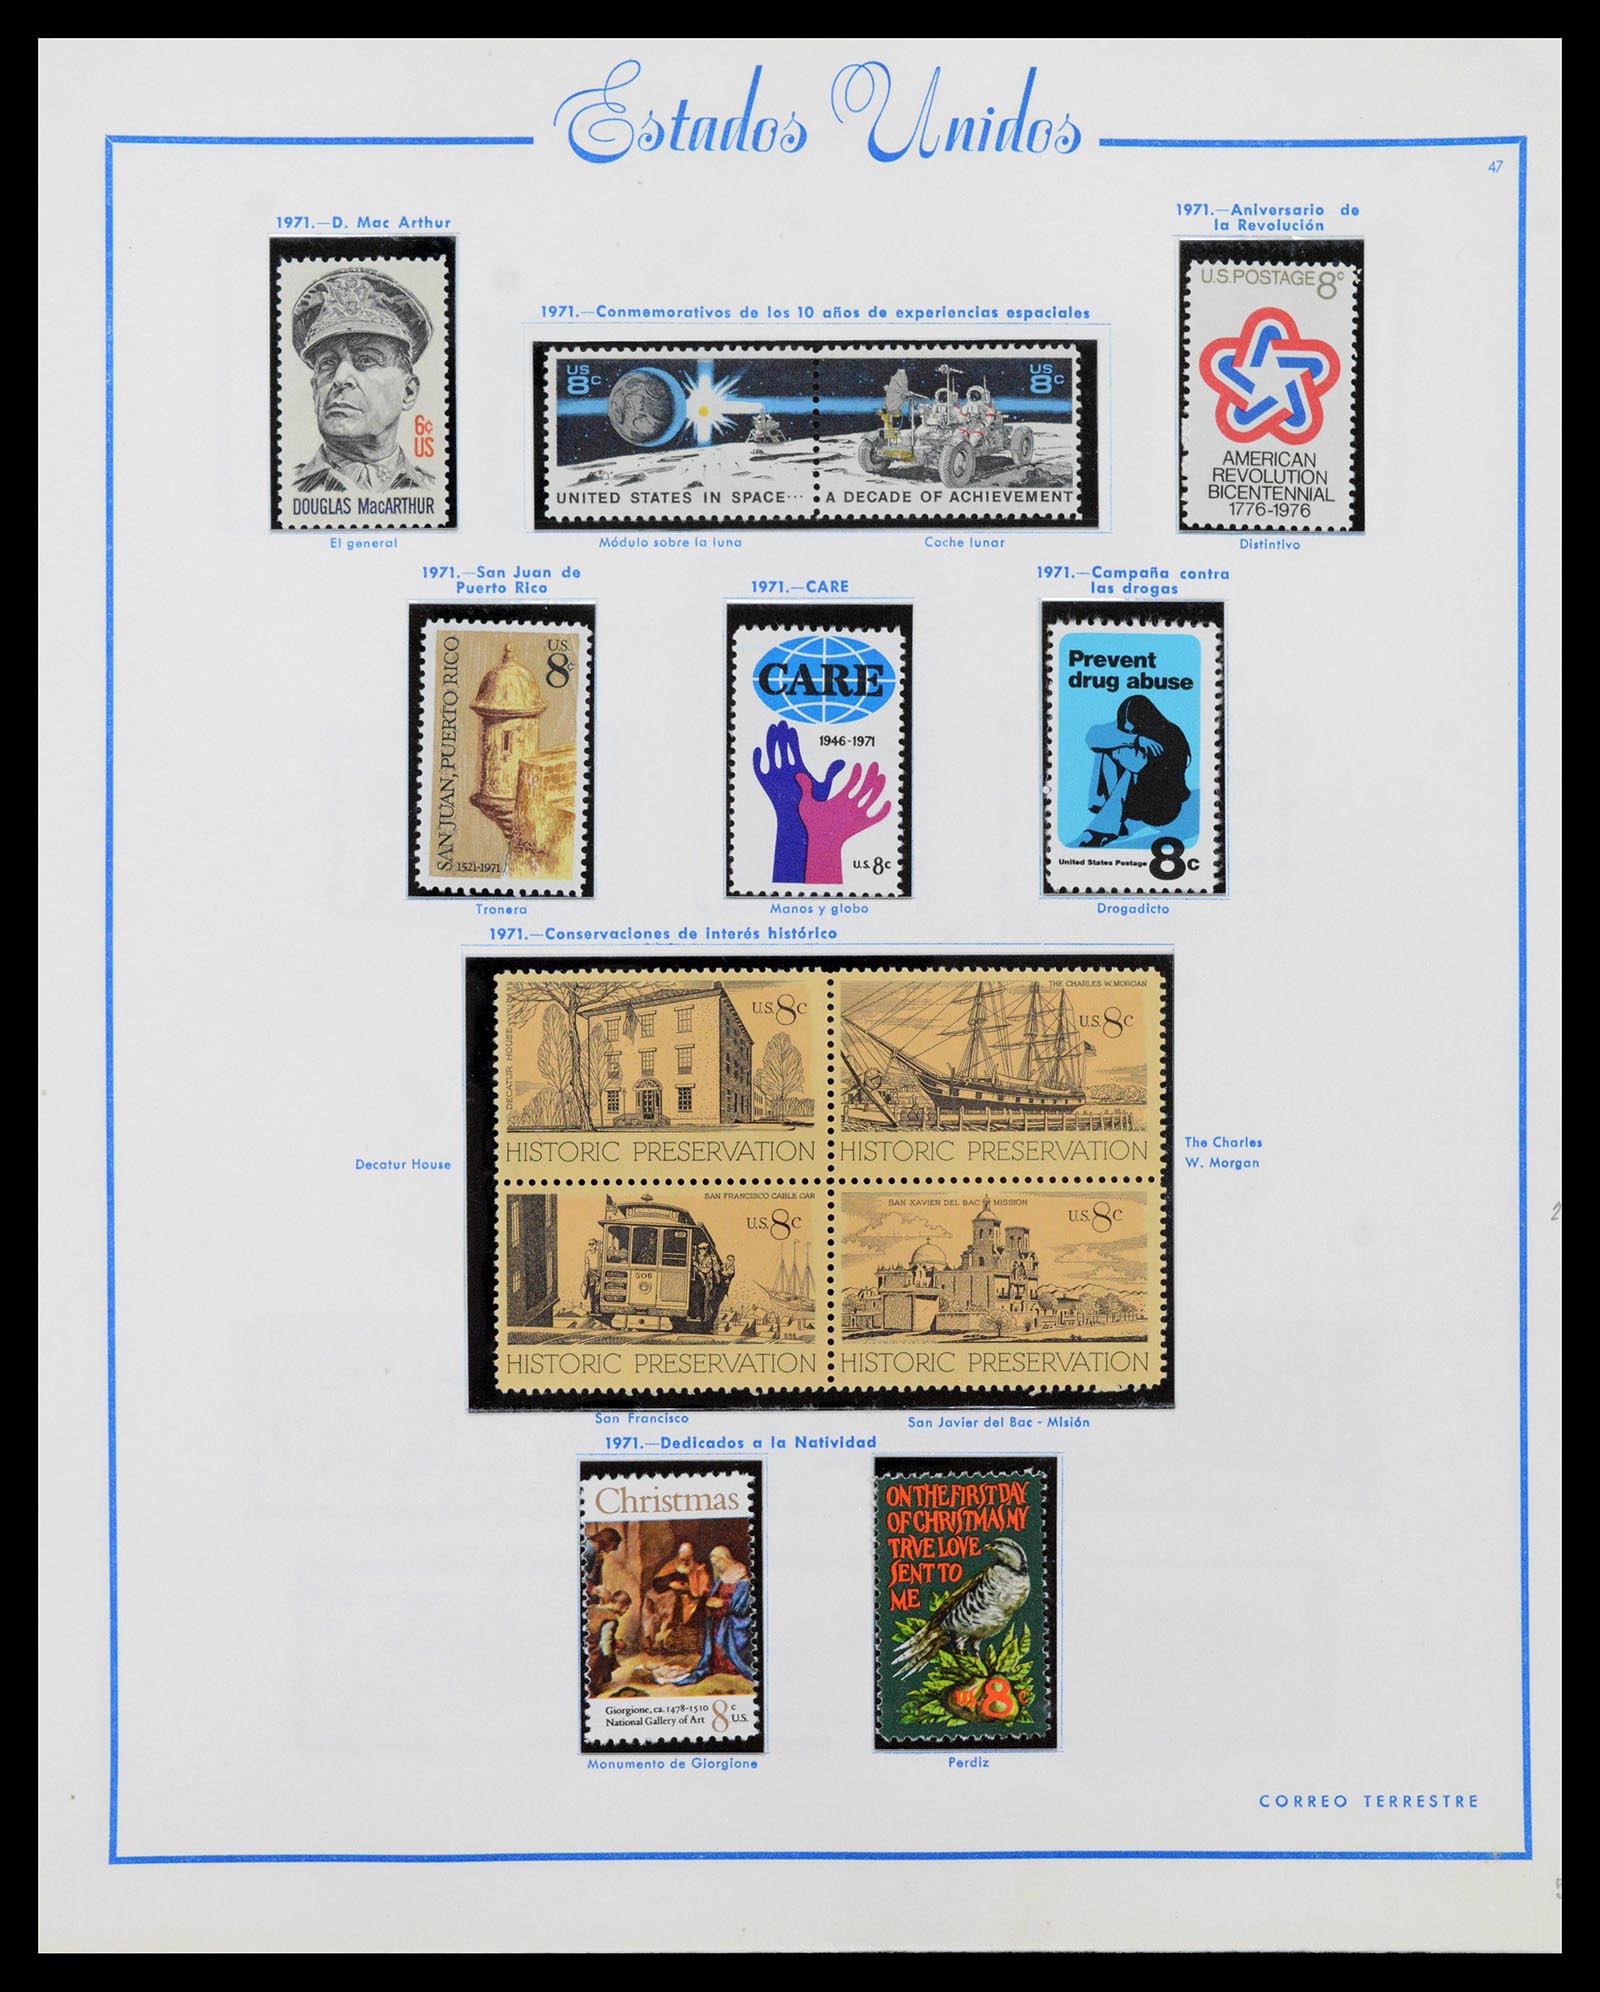 39190 0052 - Stamp collection 39190 USA 1851-1975.